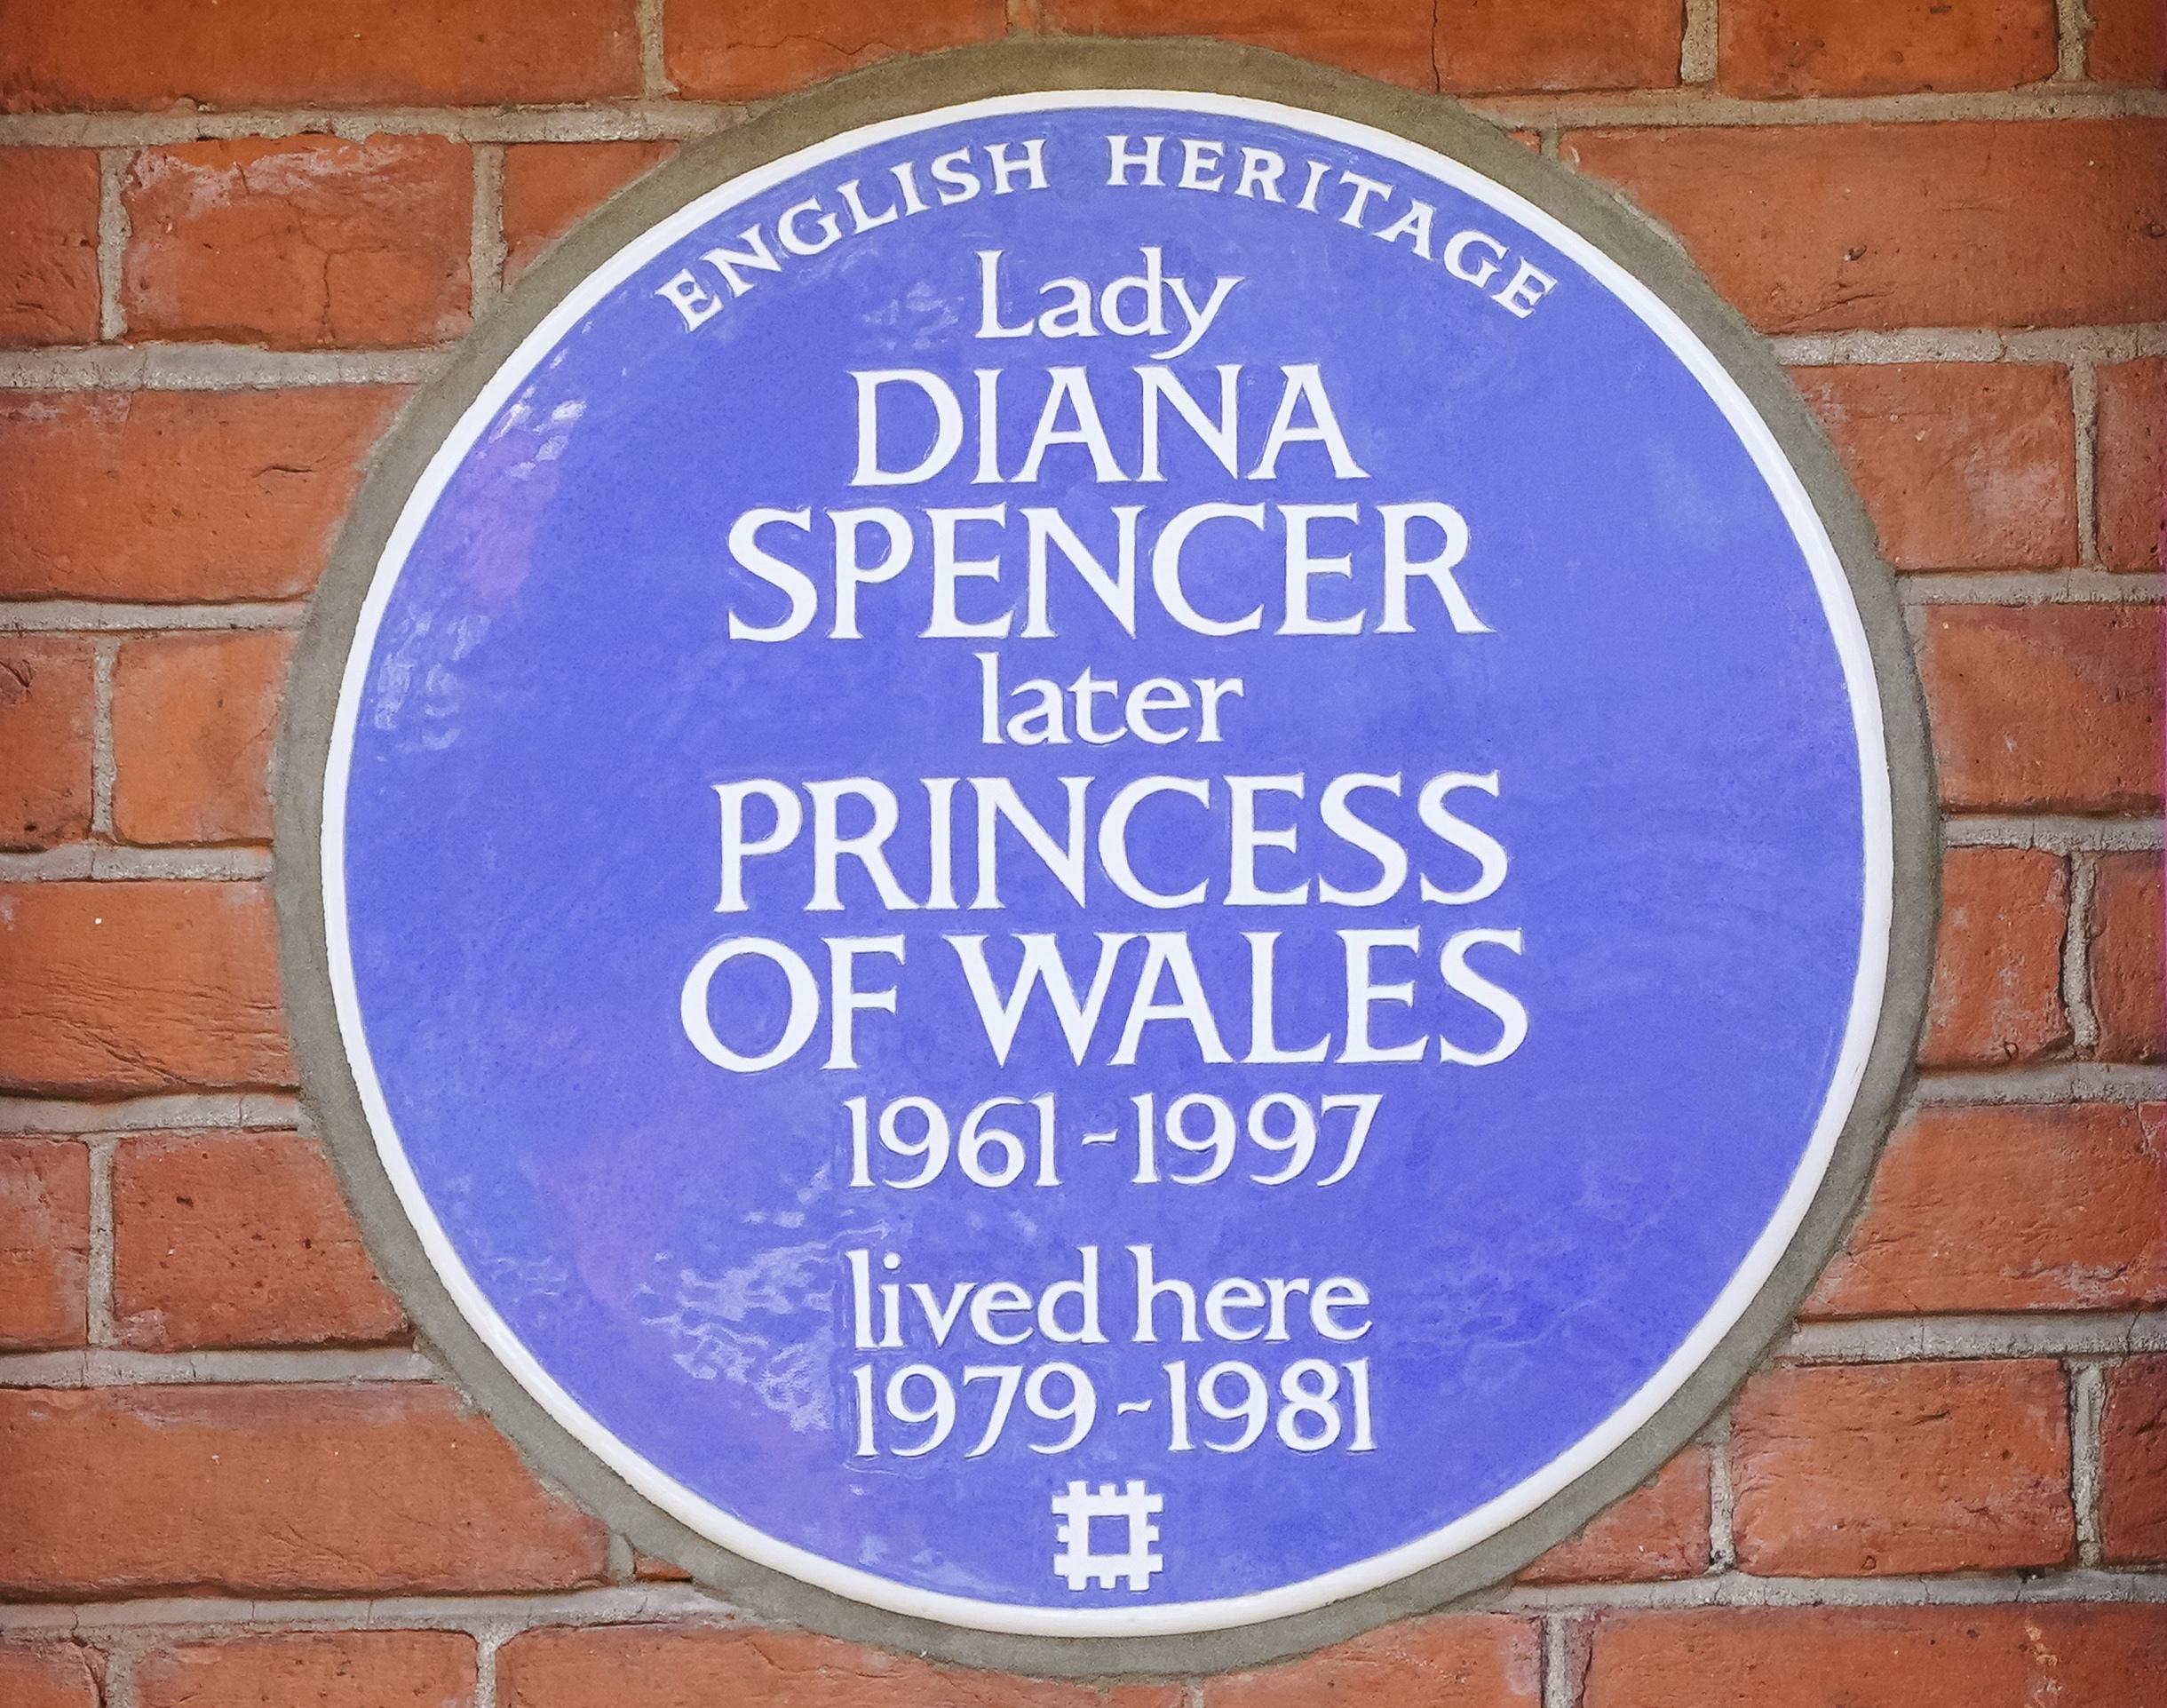 Μια διάσημη μπλε πλακέτα στο σπίτι που ζούσε η πριγκίπισσα Νταϊάνα